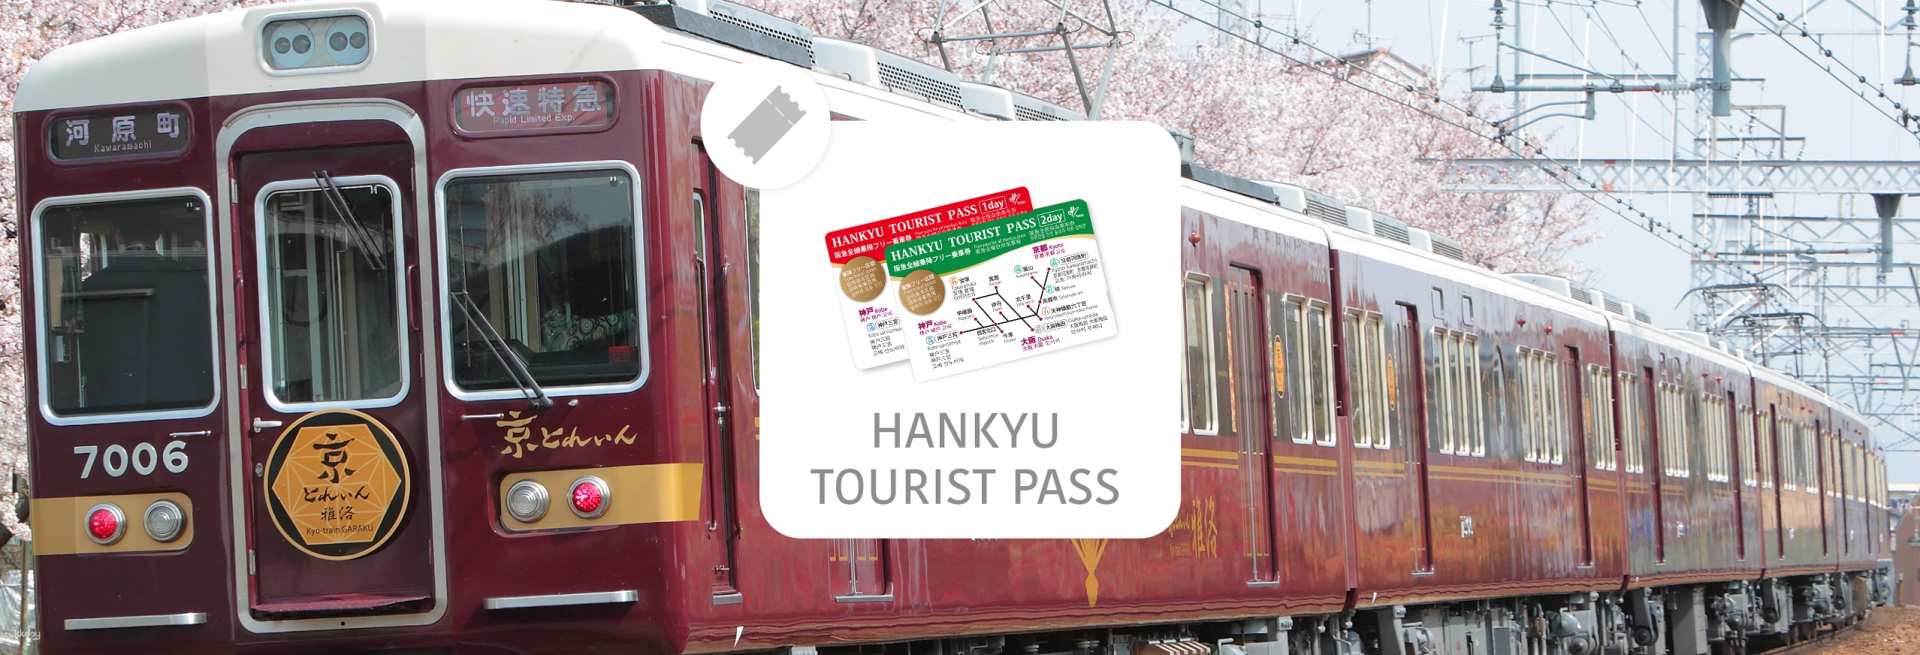 日本-大阪,京都阪急電鐵一日券・二日券  HANKYU TOURIST PASS